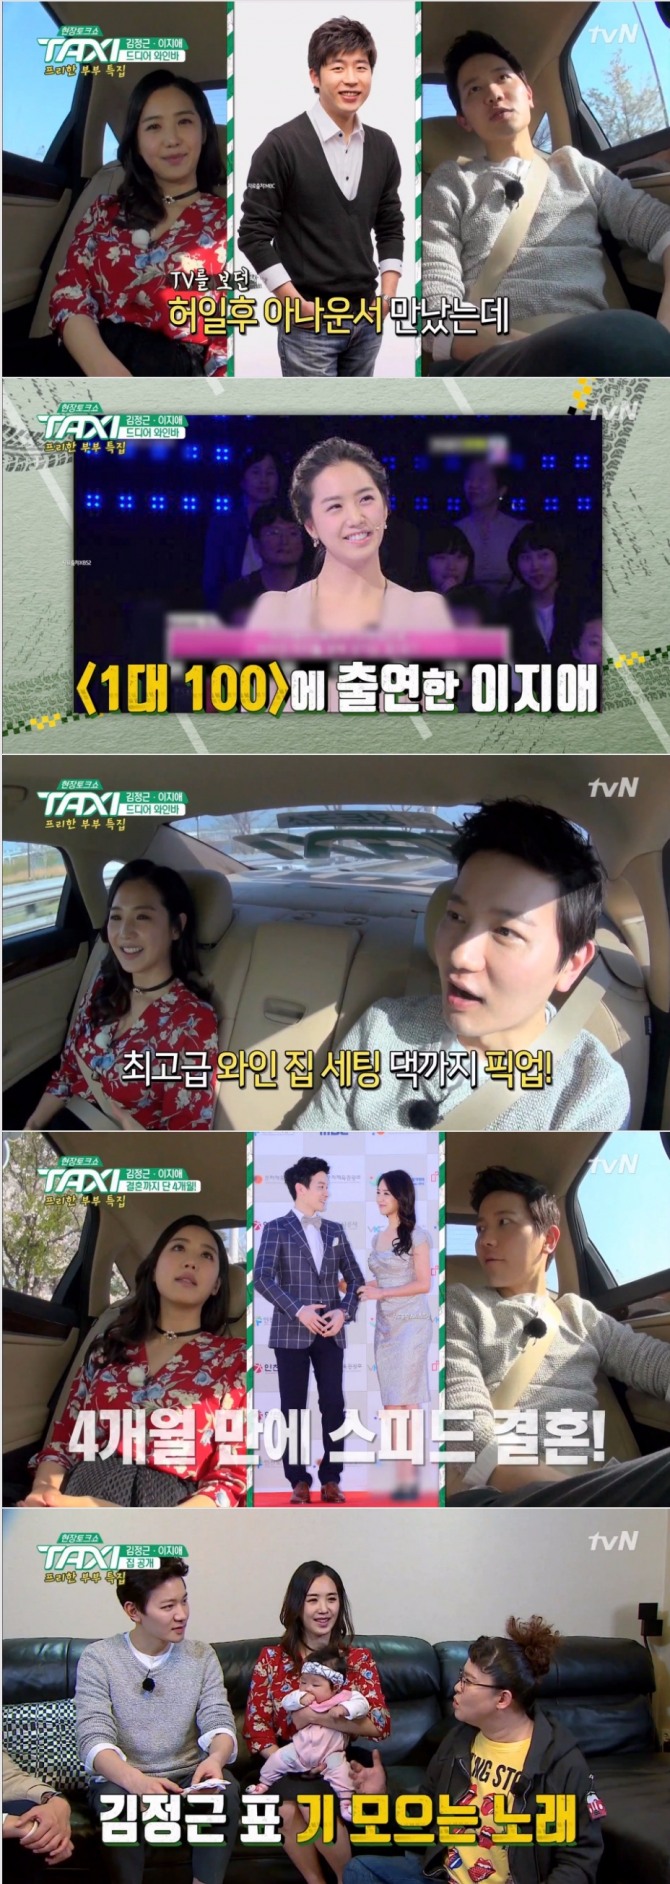 27일 방송된 tvN '현장토크쇼 택시'에서는 방송인 이지애와 김정근 부부가 출연해 결혼 7년차에도 여전히 신혼같은 일상을 전했다. 사진=tvN 방송 캡처